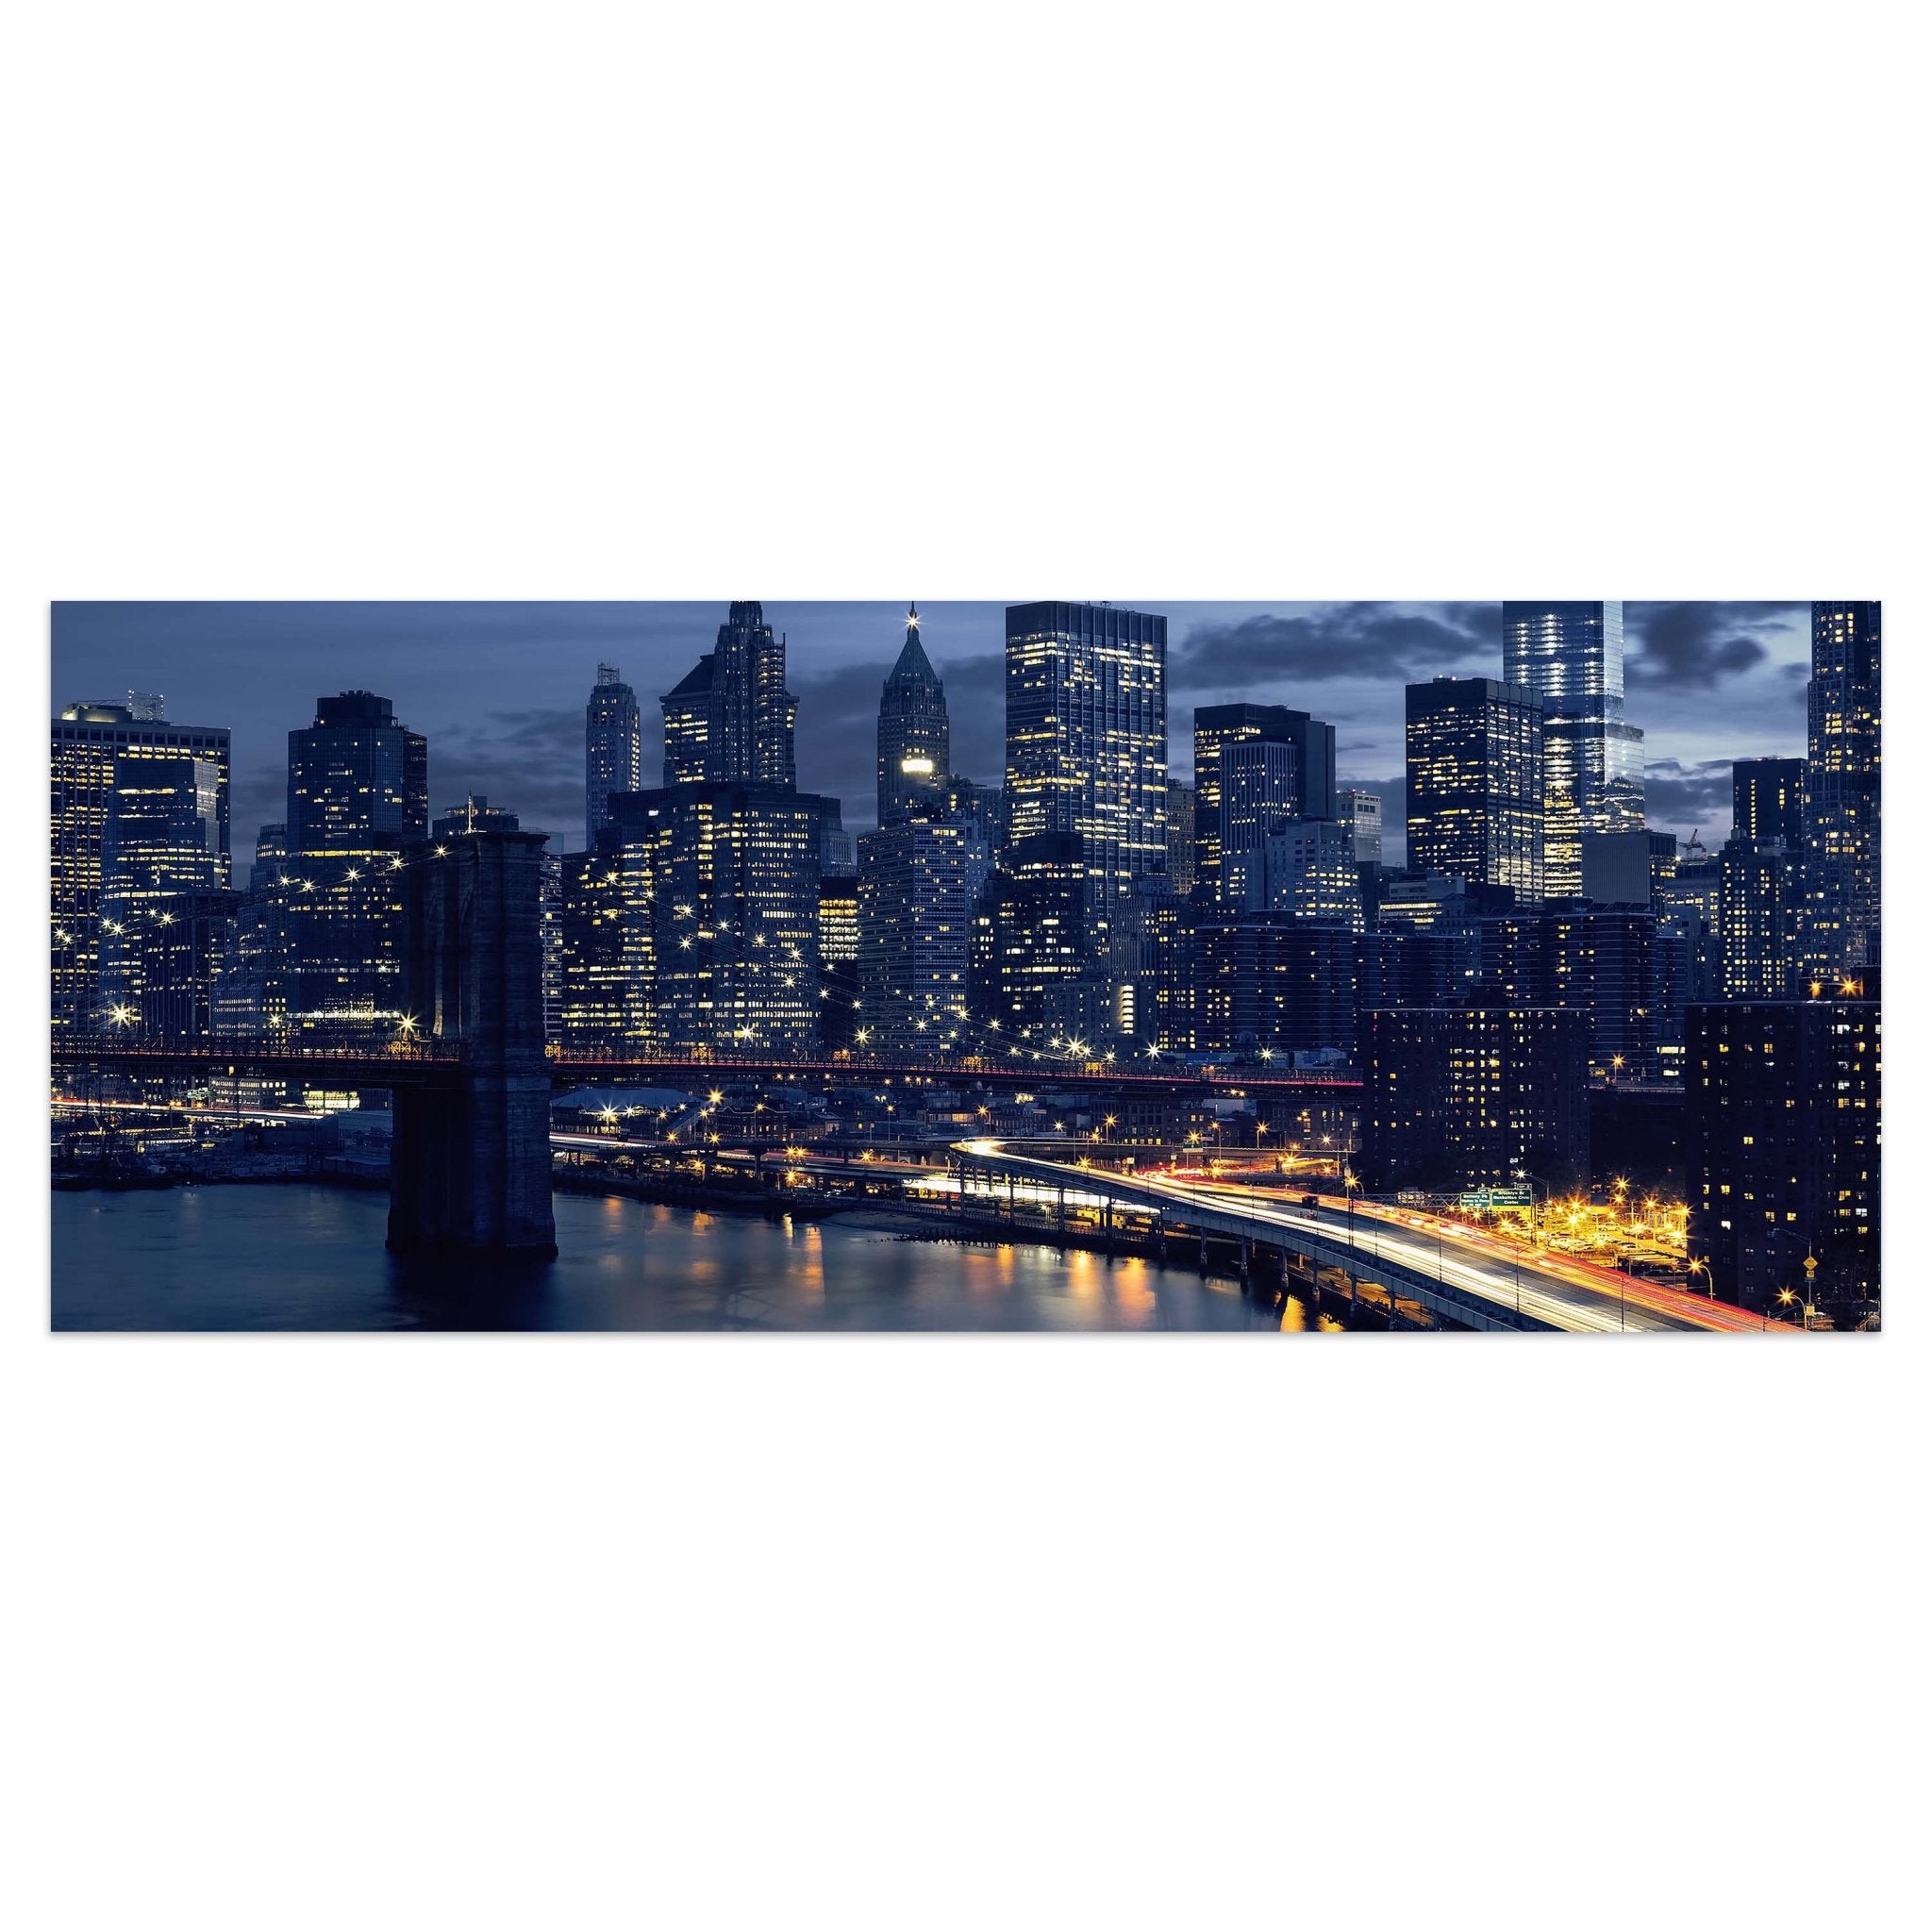 Leinwandbild Skyline der Innenstadt von New York M0935 kaufen - Bild 1